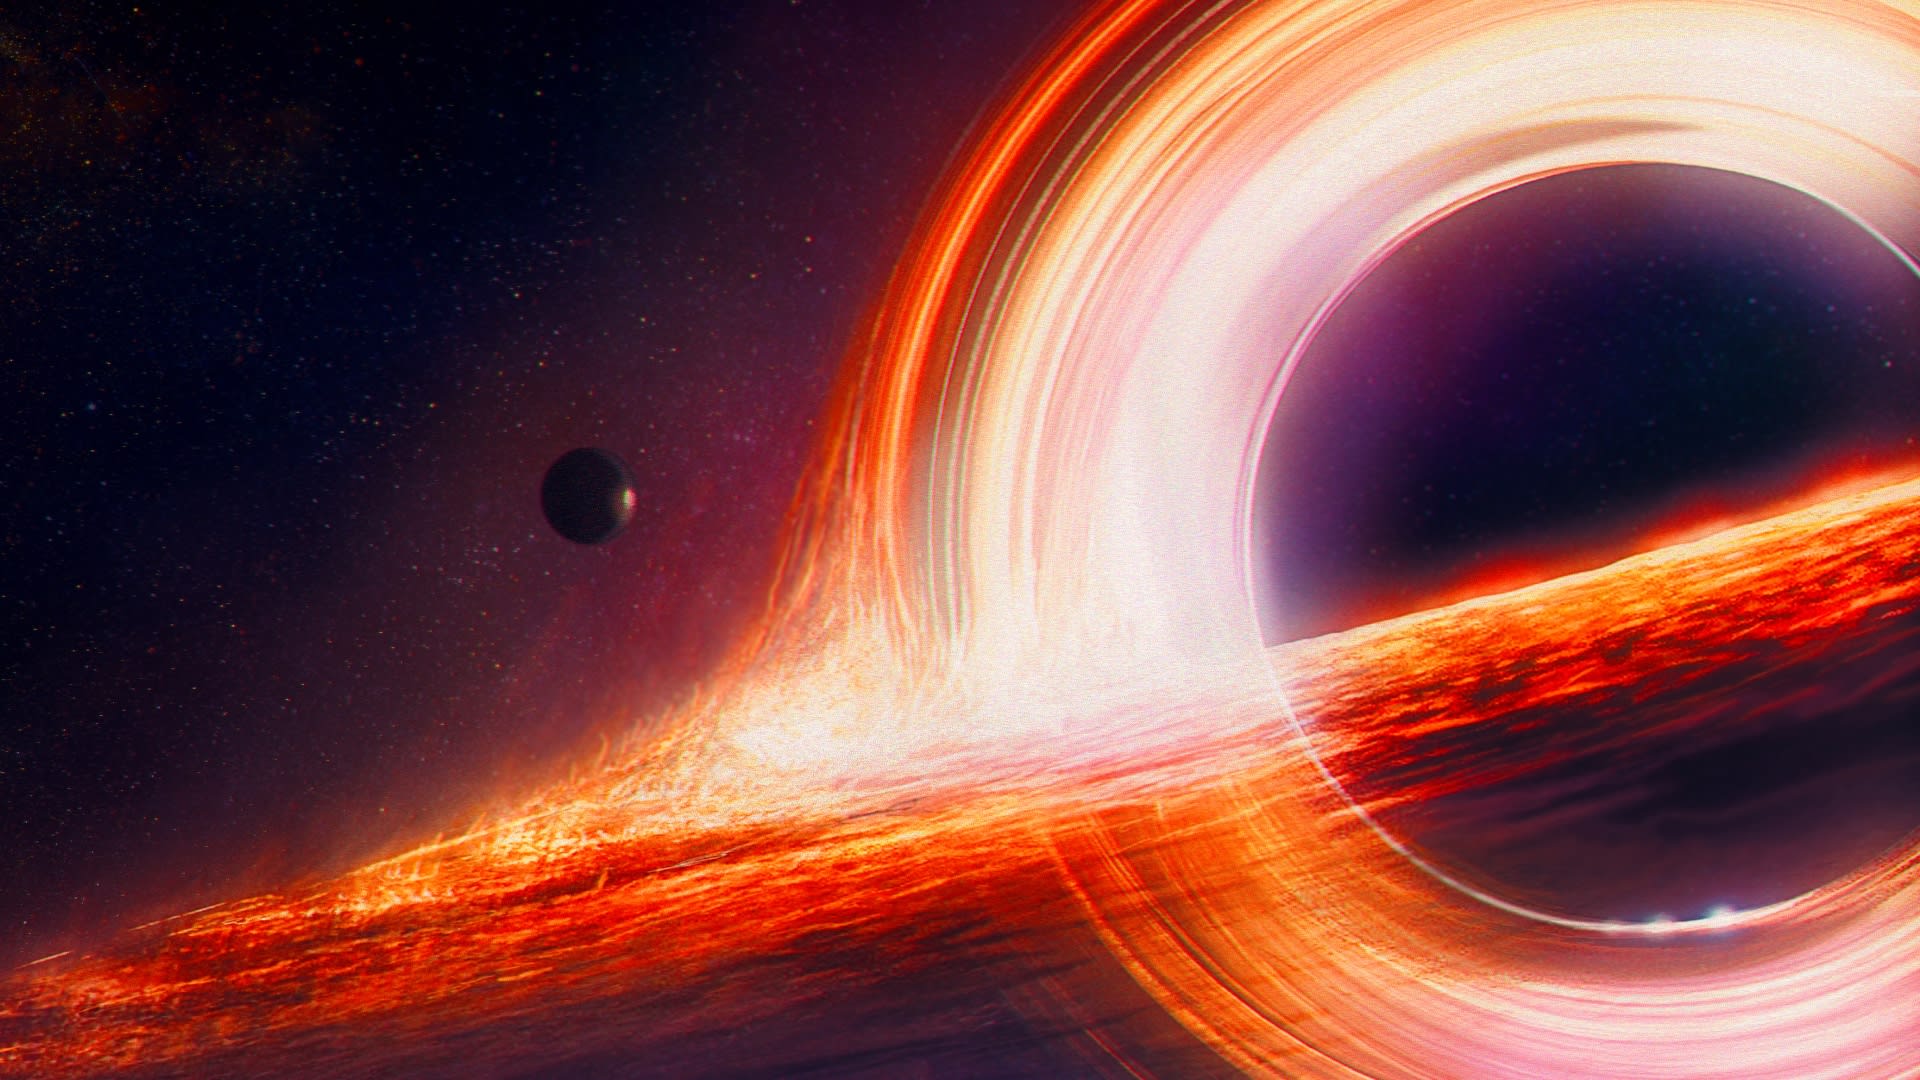 Ilustrační fotka černé díry